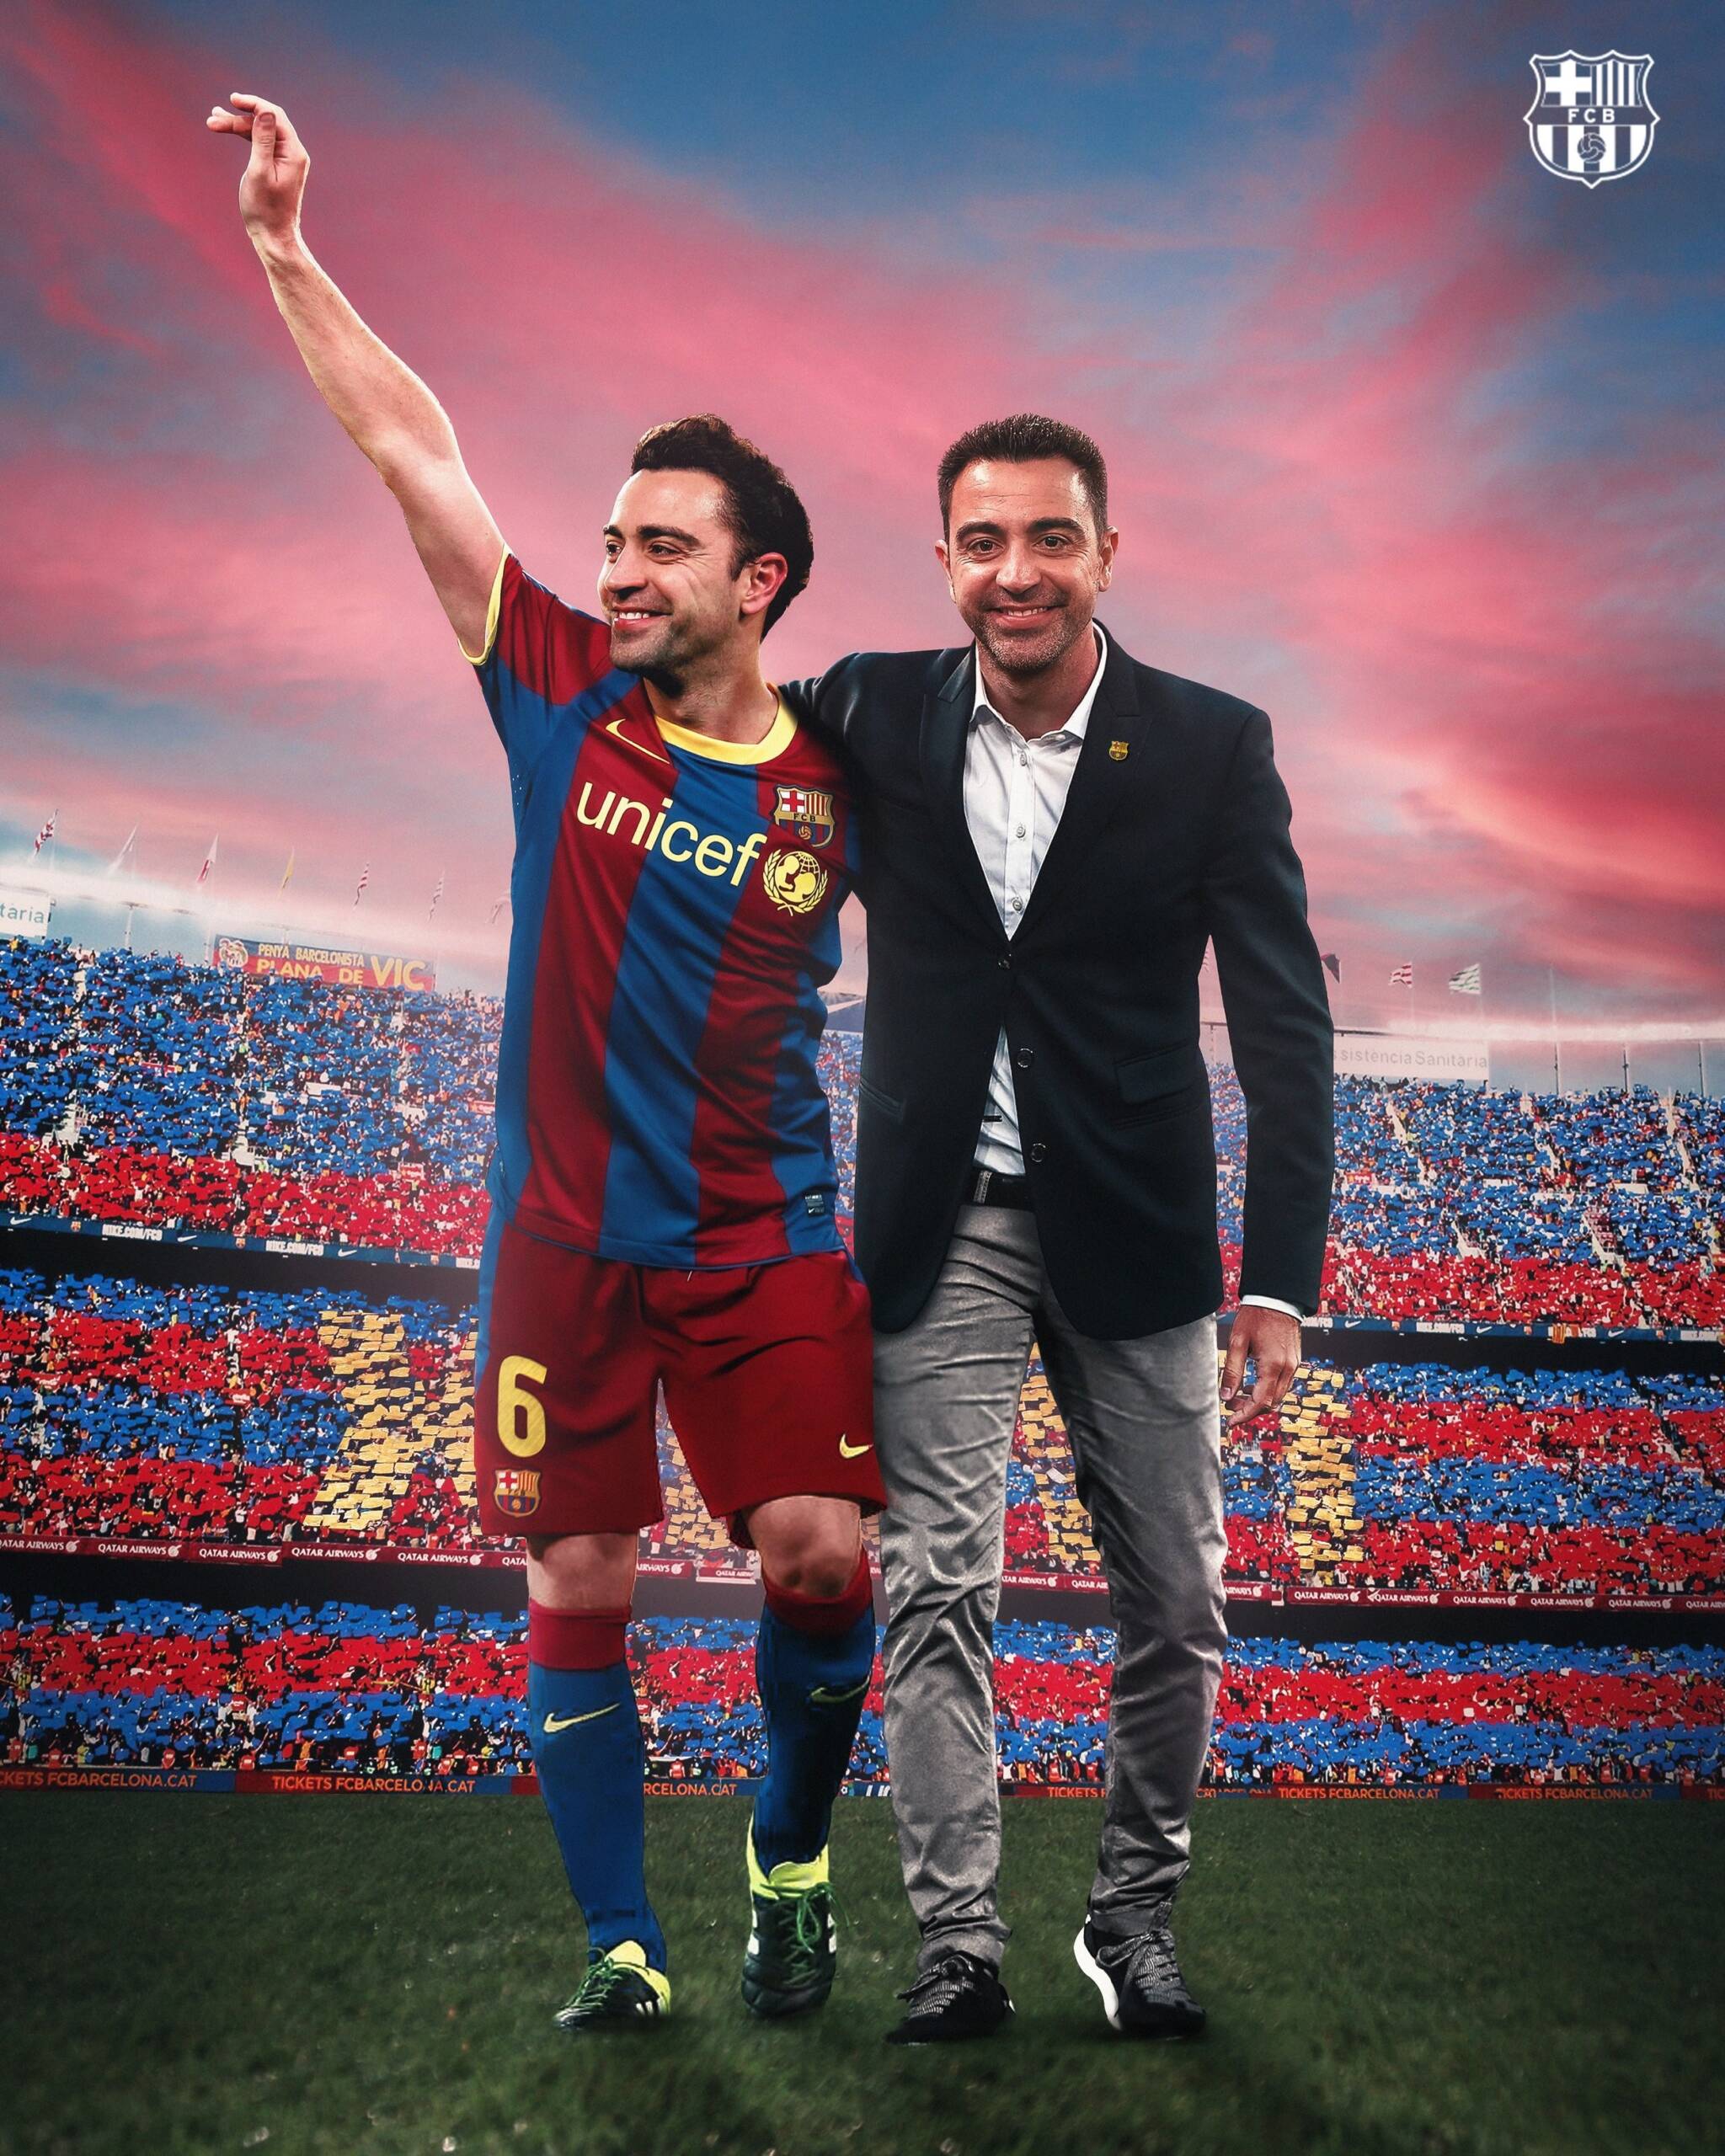 A Barcellona presentano Xavi “il prescelto”: «Darò la vita per il club» (VIDEO)